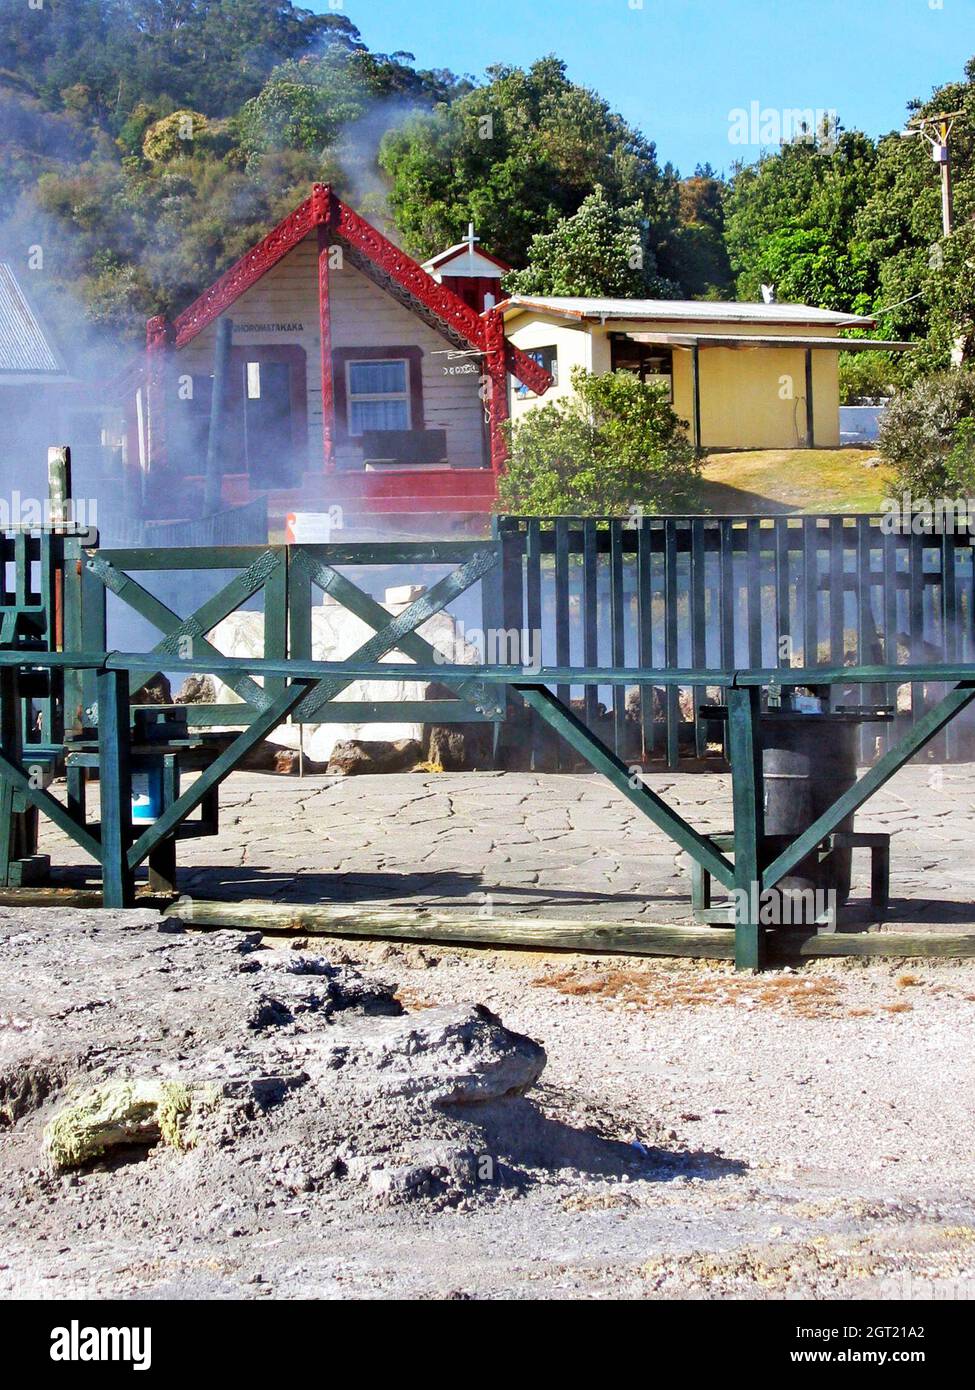 Whaka Village, una aldea maorí viva en Rotorua, Nueva Zelanda, es una atracción turística mientras que es el hogar de muchas familias. La principal atracción es el paisaje geotérmico en el que los residentes viven de manera sostenible con los elementos naturales como parte de su vida diaria. La cocina, el baño y las actividades recreativas se realizan respetando y trabajando con los elementos geotérmicos de sus alrededores. Foto de stock